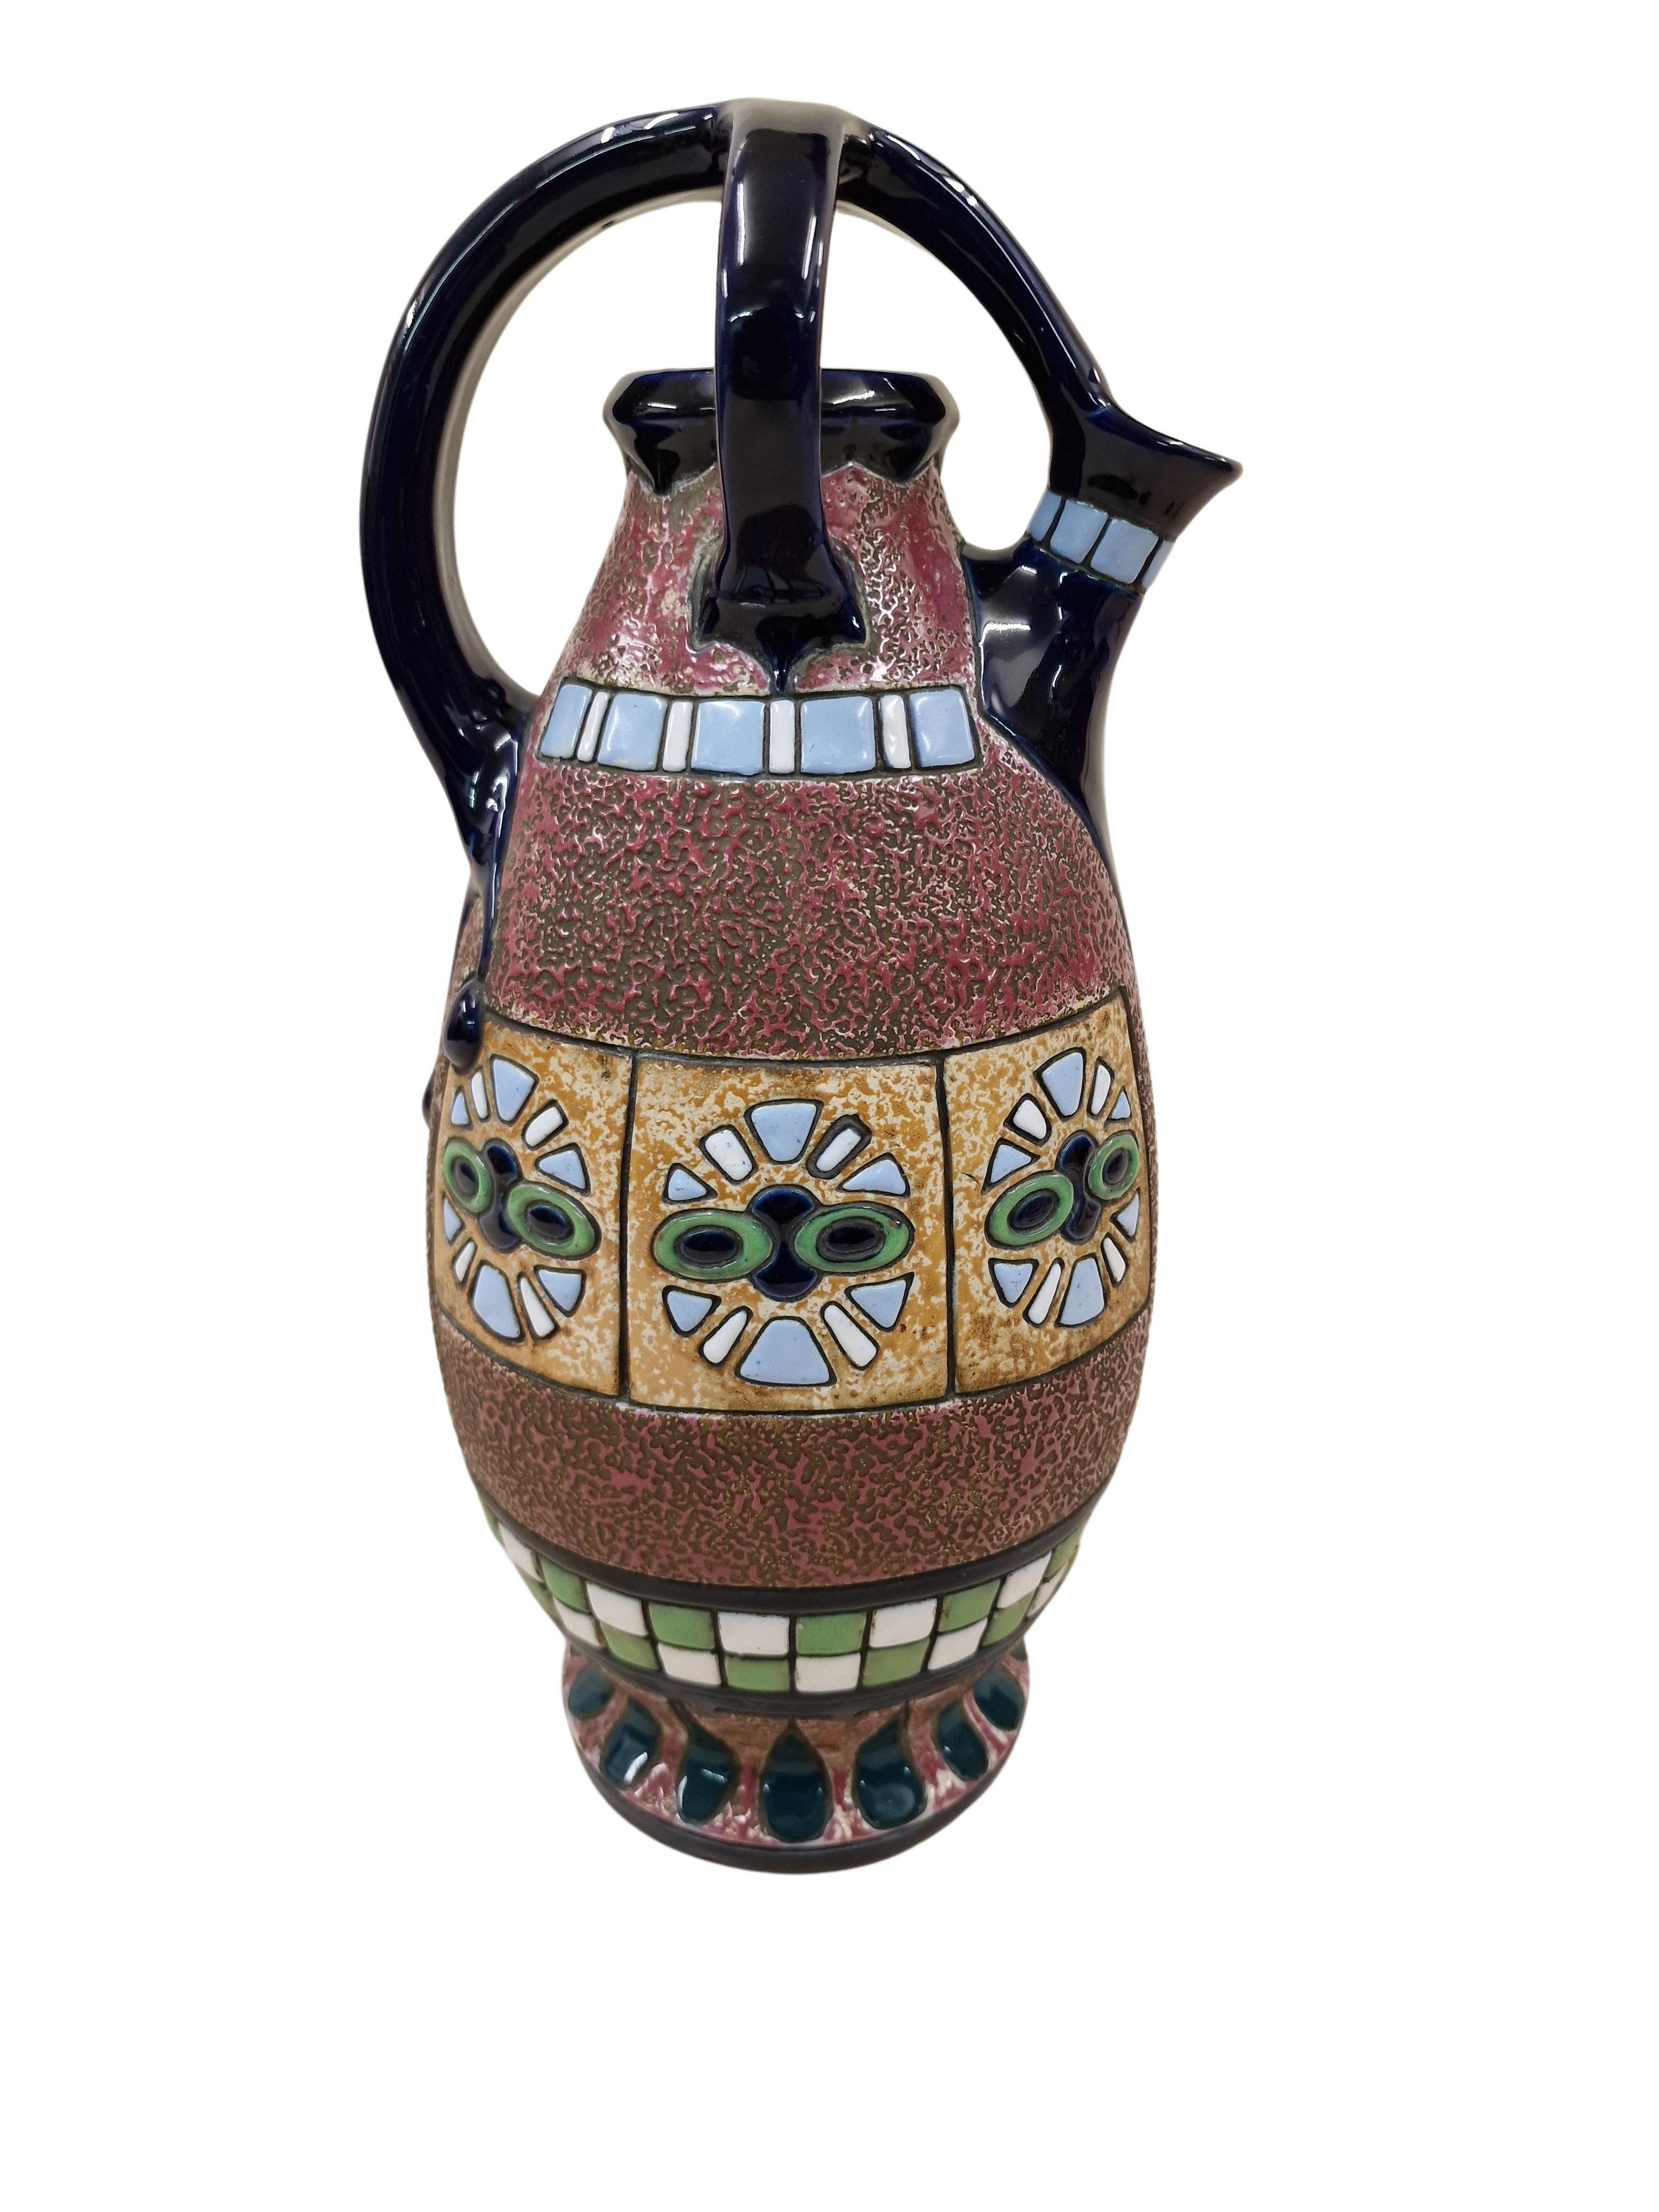 Très impressionnante cruche de la période Art déco, fabriquée vers 1915 par la société Amphora de la République tchèque.

L'objet peut être vu de plusieurs côtés. Sur la page d'affichage principale, vous pouvez voir une voiture hippomobile au design